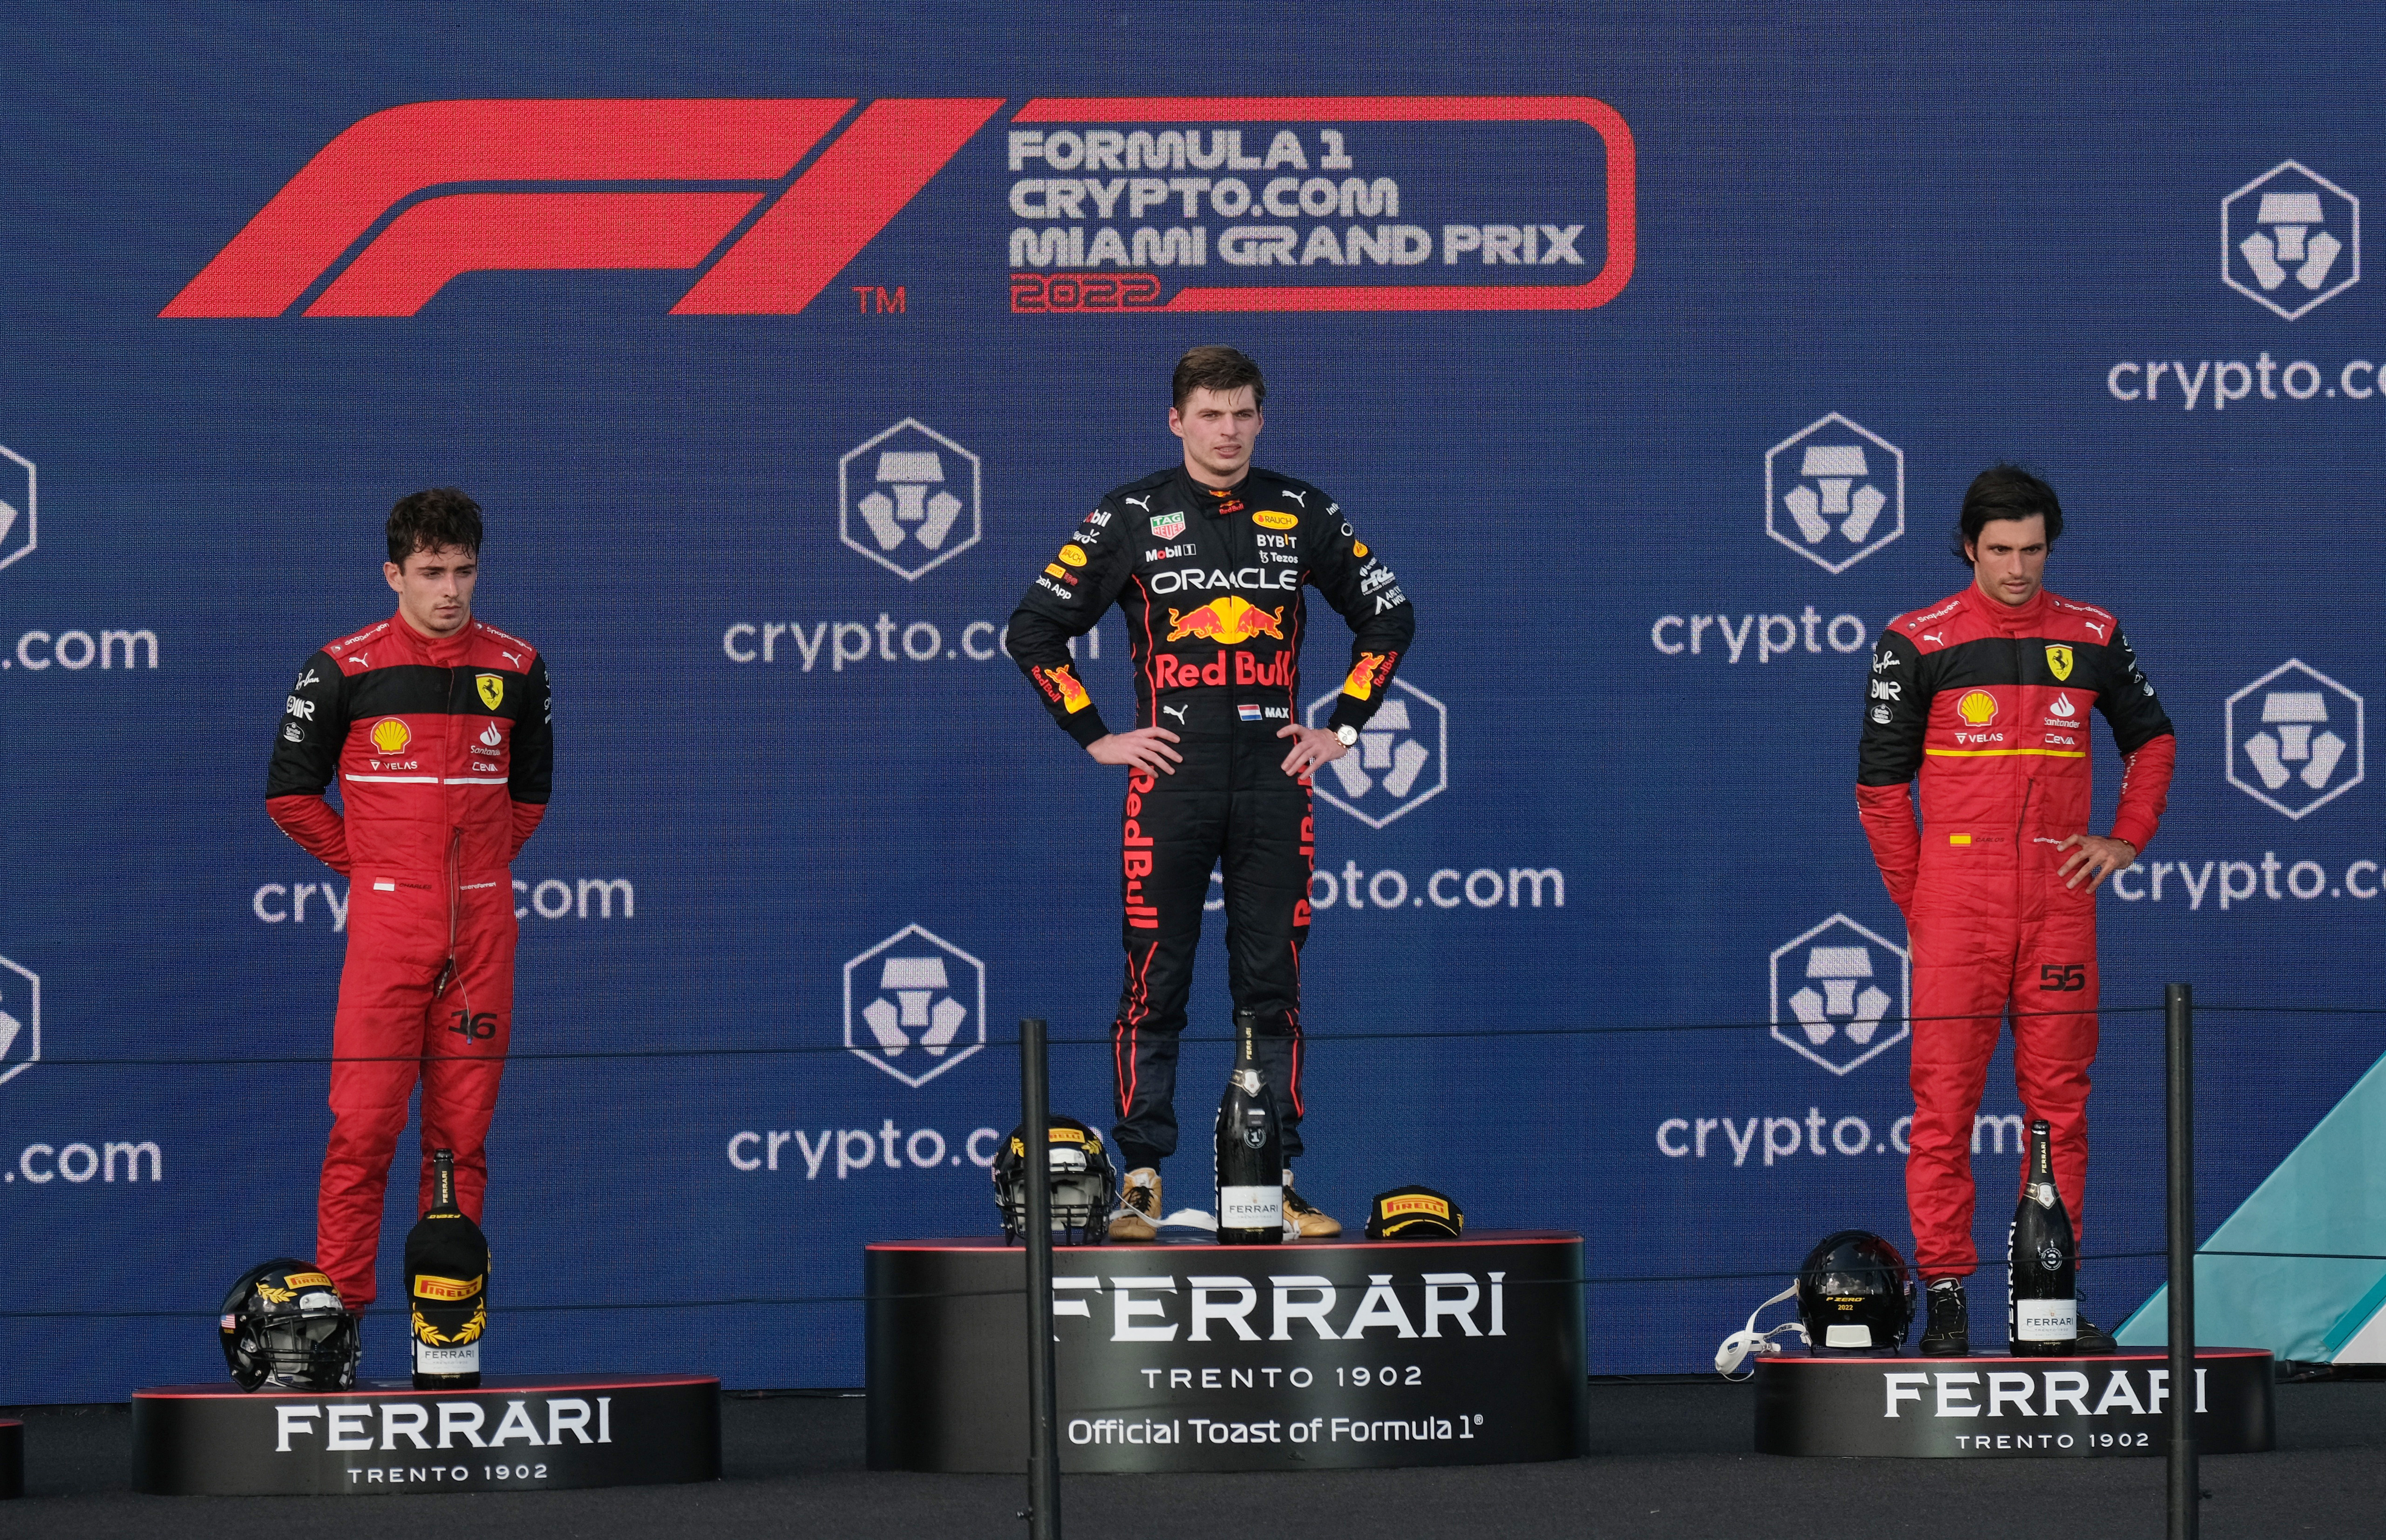 El podio del GP de Miami: Charles Leclerc, Max Verstappen y Carlos Sainz. En lugar de gorras con el patrocinante los pilotos recibieron cascos del fútbol americano (REUTERS/Ricardo Arduengo)